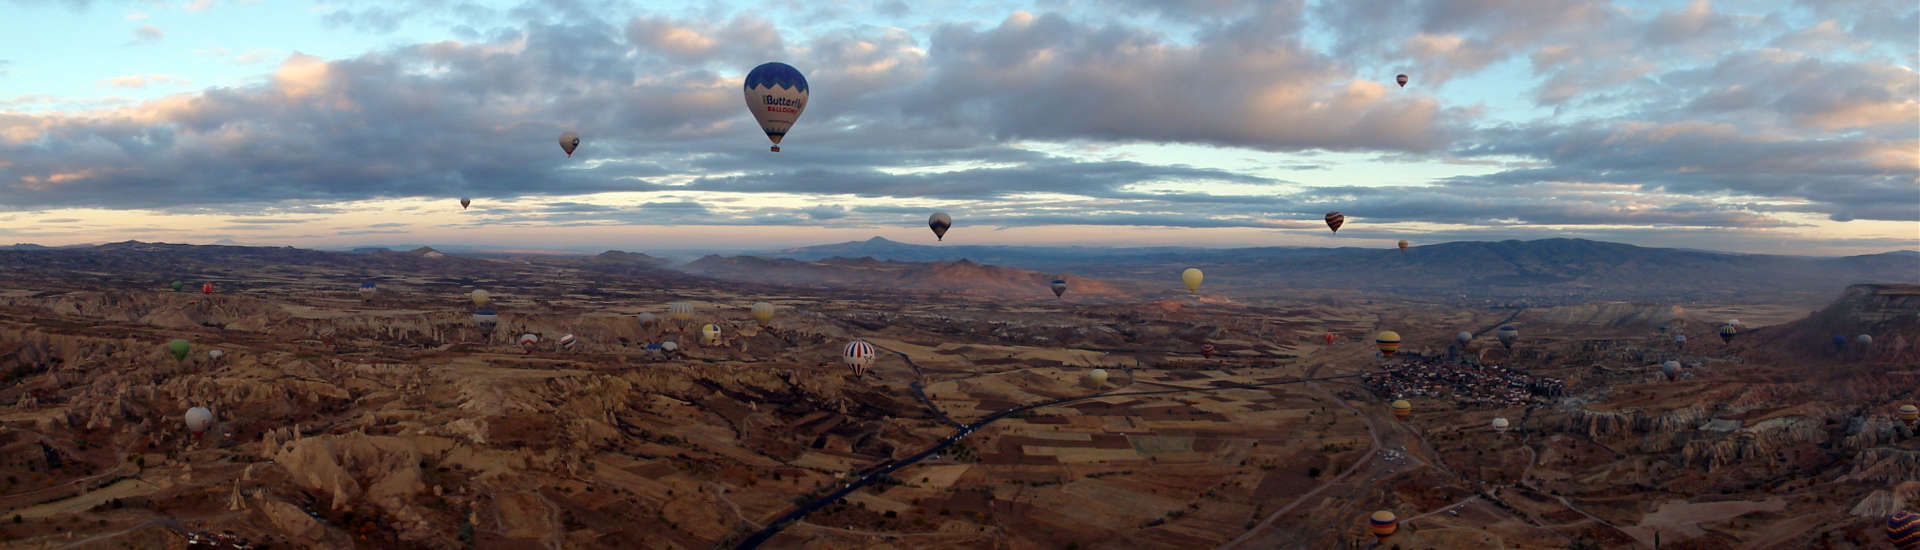 Panoramafoto aus Heißluftballon mit einfacher Kamera und deren Panoramafunktion